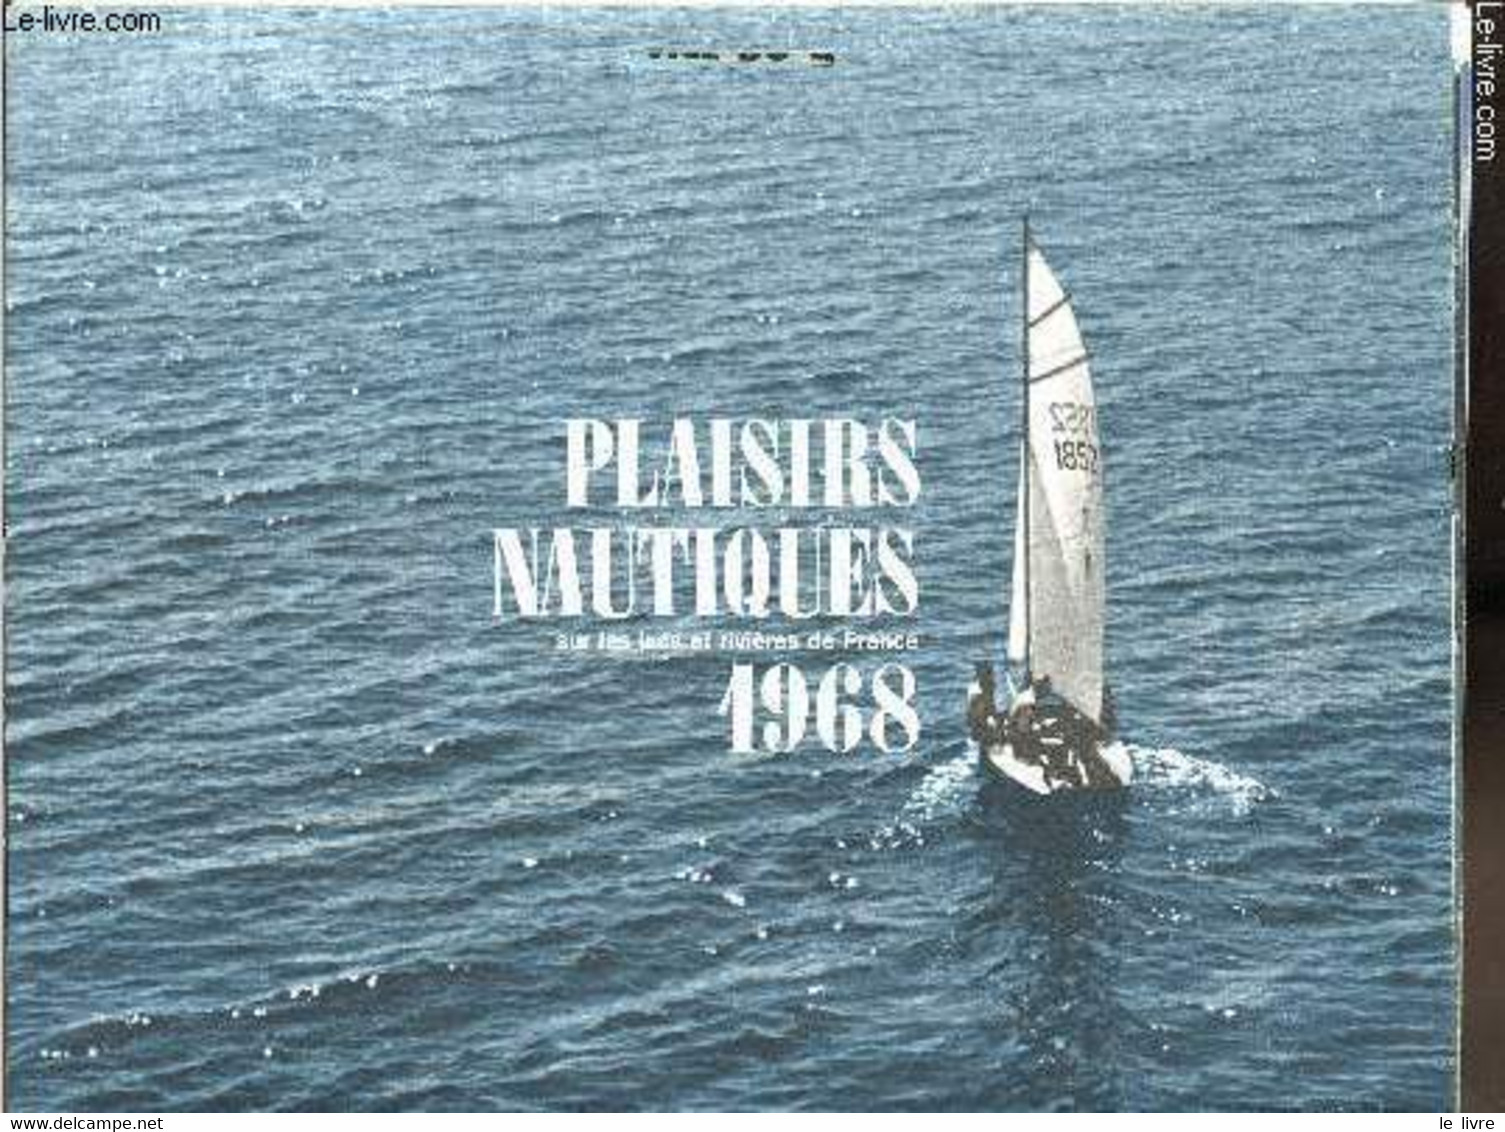 Calendriers Esso Service Du Libournais - 1968 - Plaisirs Nautiques Sur Les Lacs Et Rivières De France - - Esso Service D - Diaries